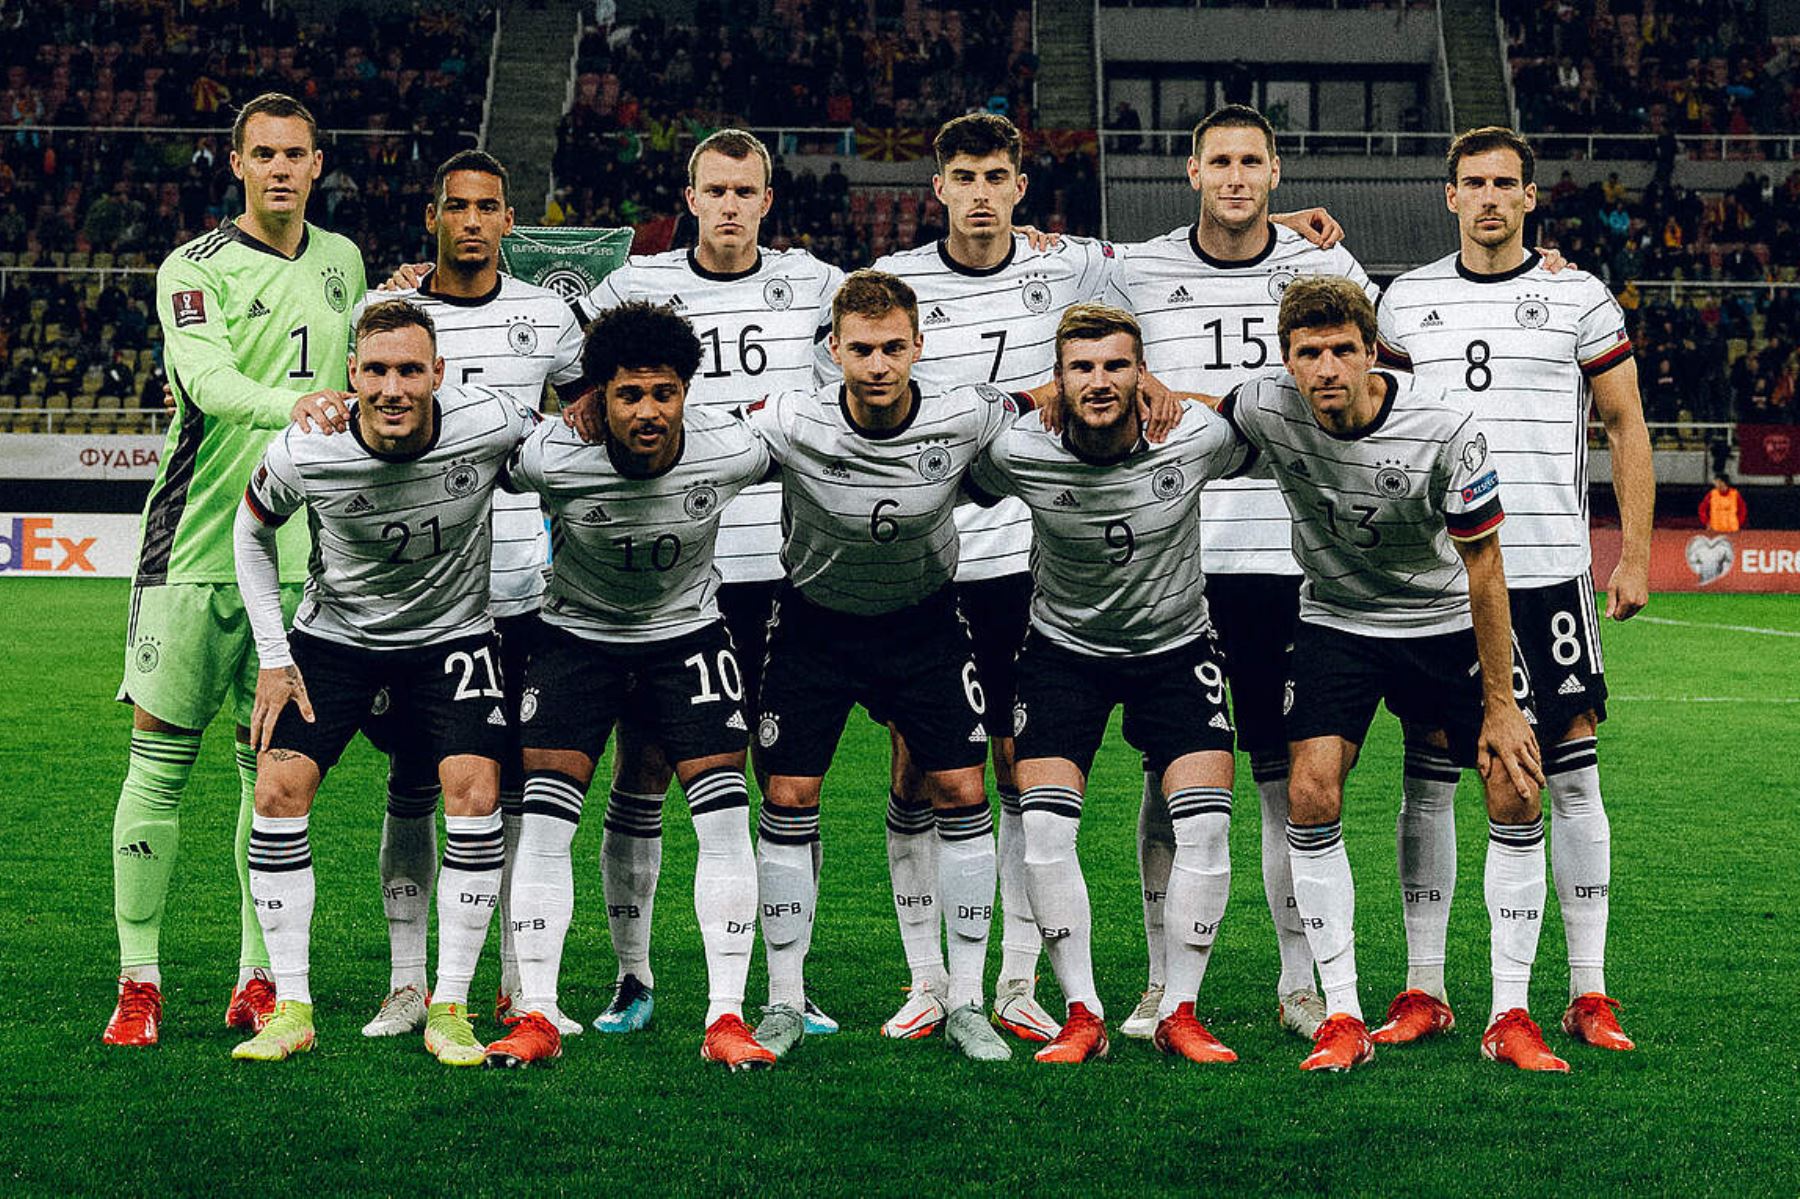 Alemania aparece como candidata de fuerza para ganar el Mundial Catar 2022